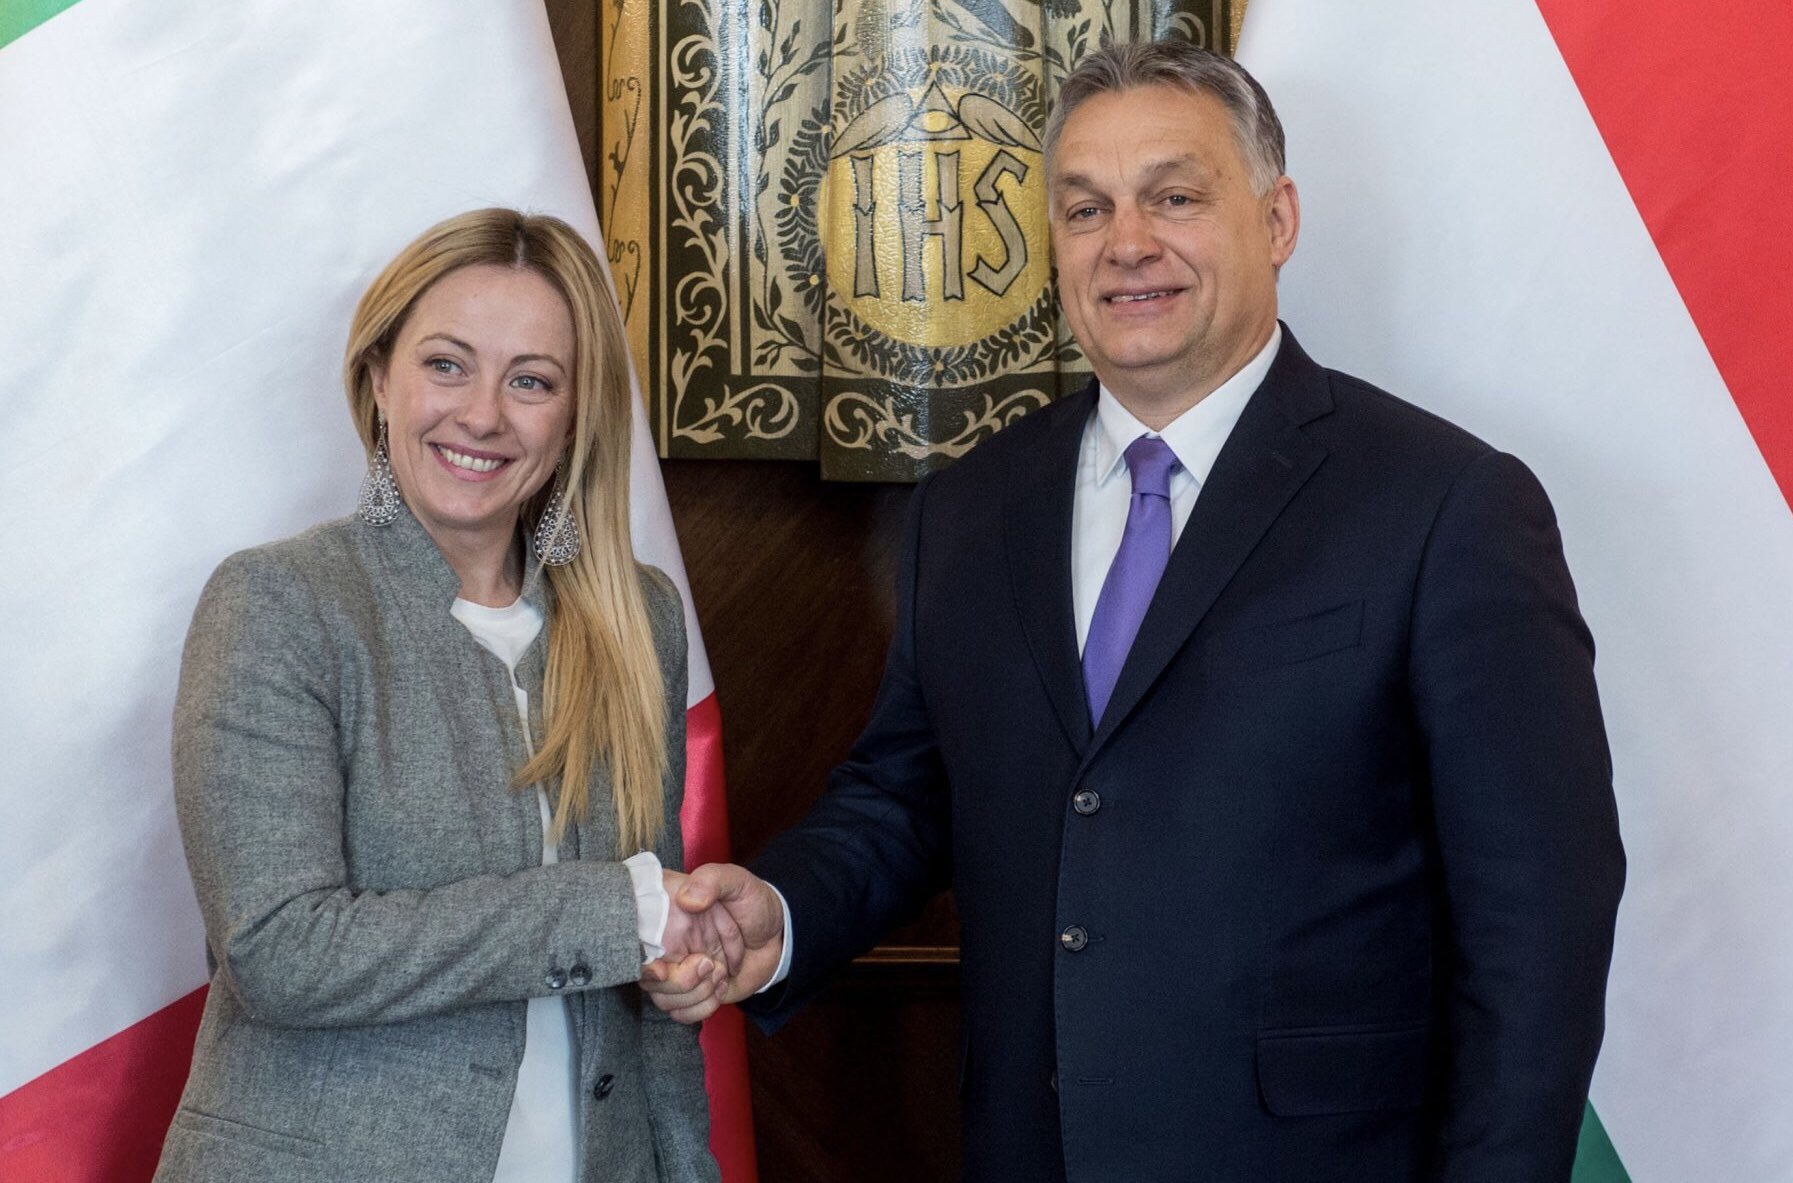 Ιταλία – Εκλογές: Ο σύμβουλος του πρωθυπουργού της Ουγγαρίας συνεχάρη την συντηρητική παράταξη